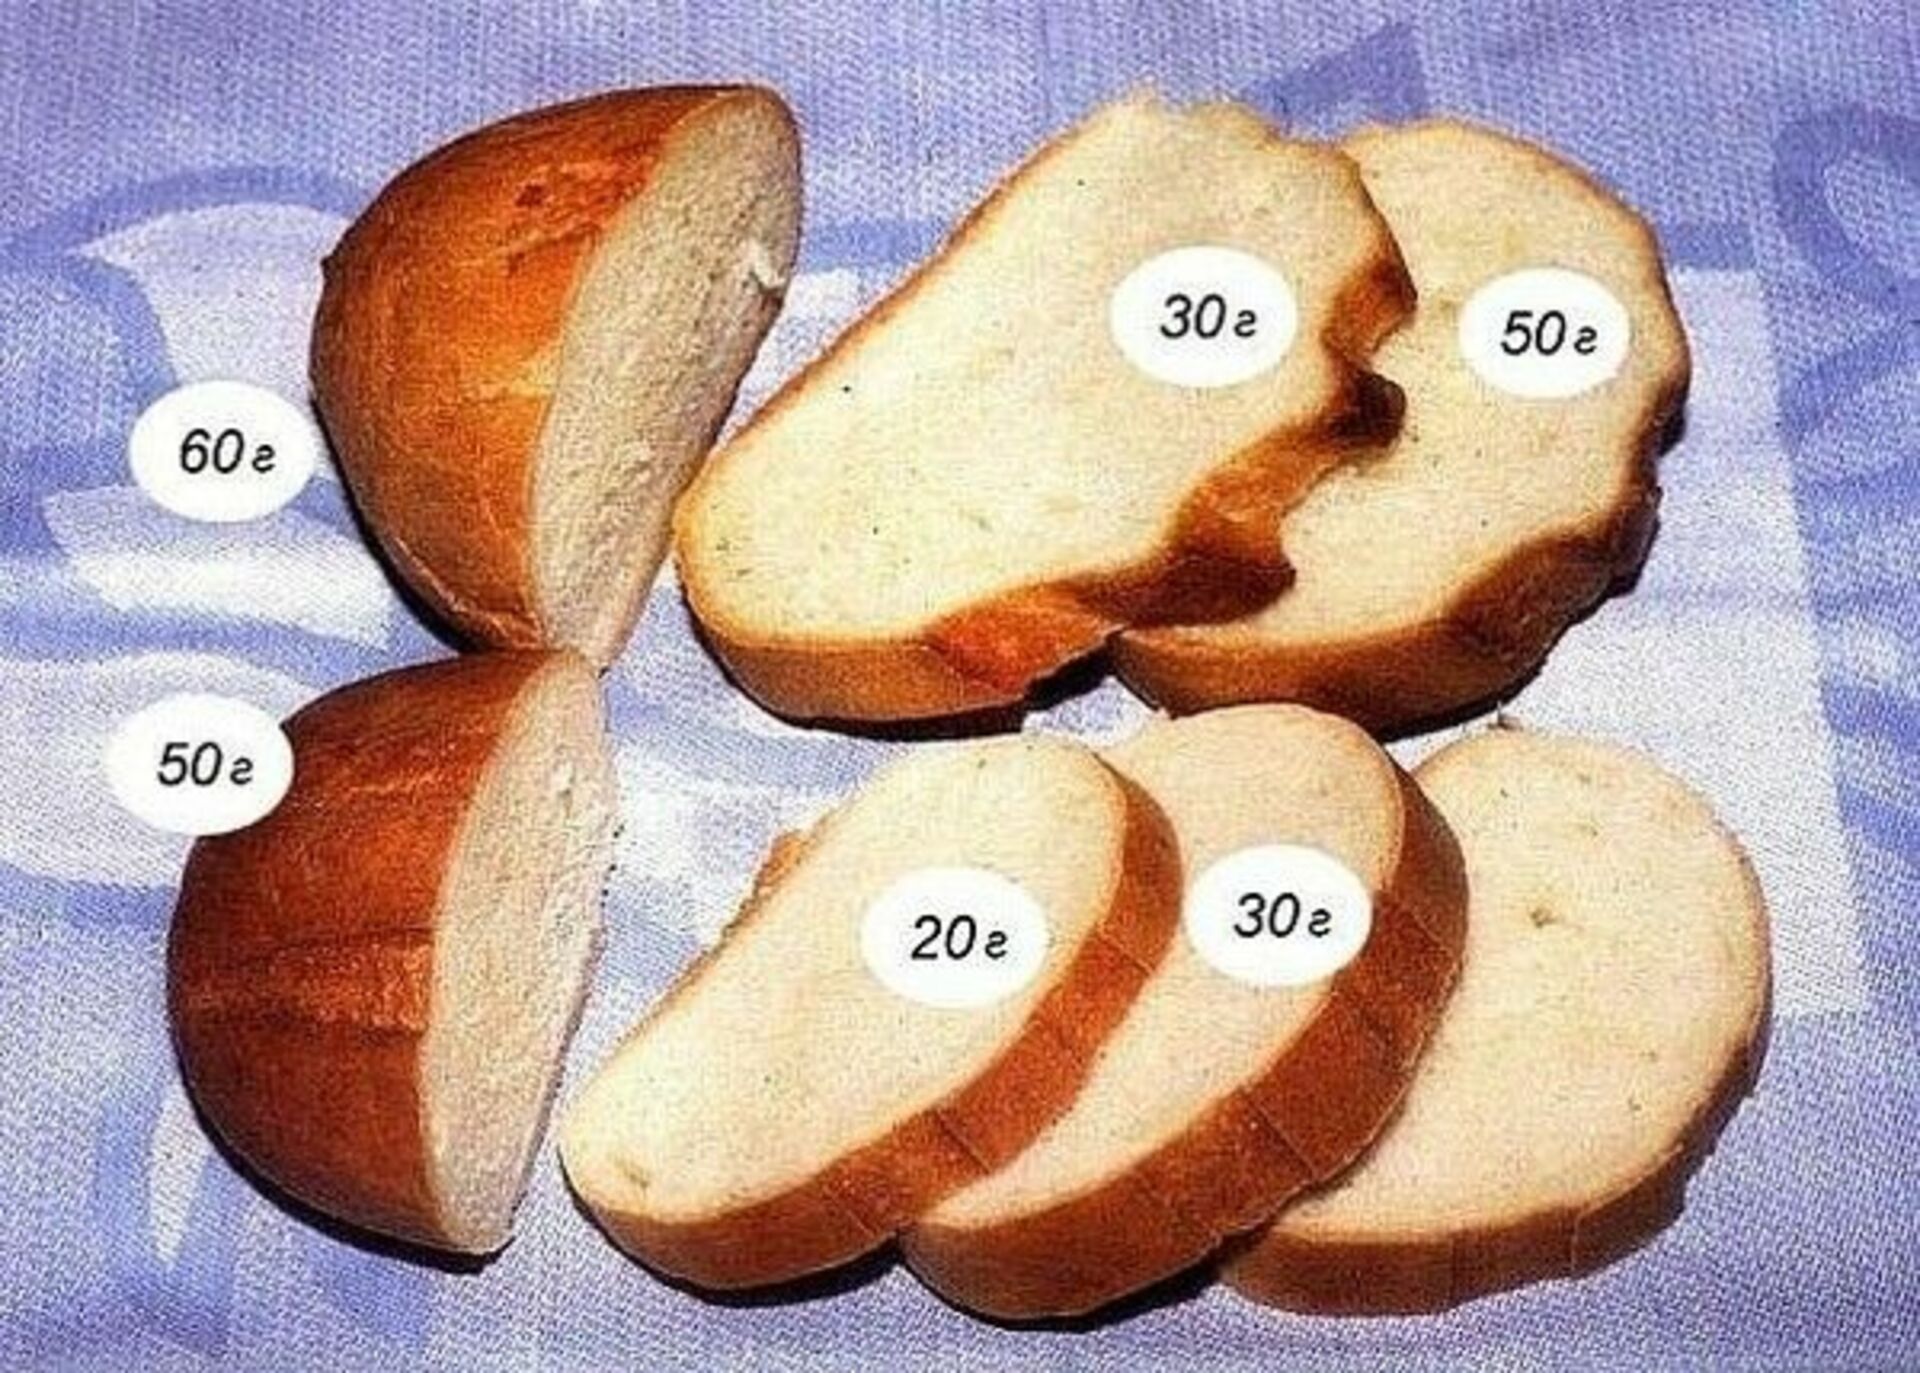 100 грамм хлеба это сколько